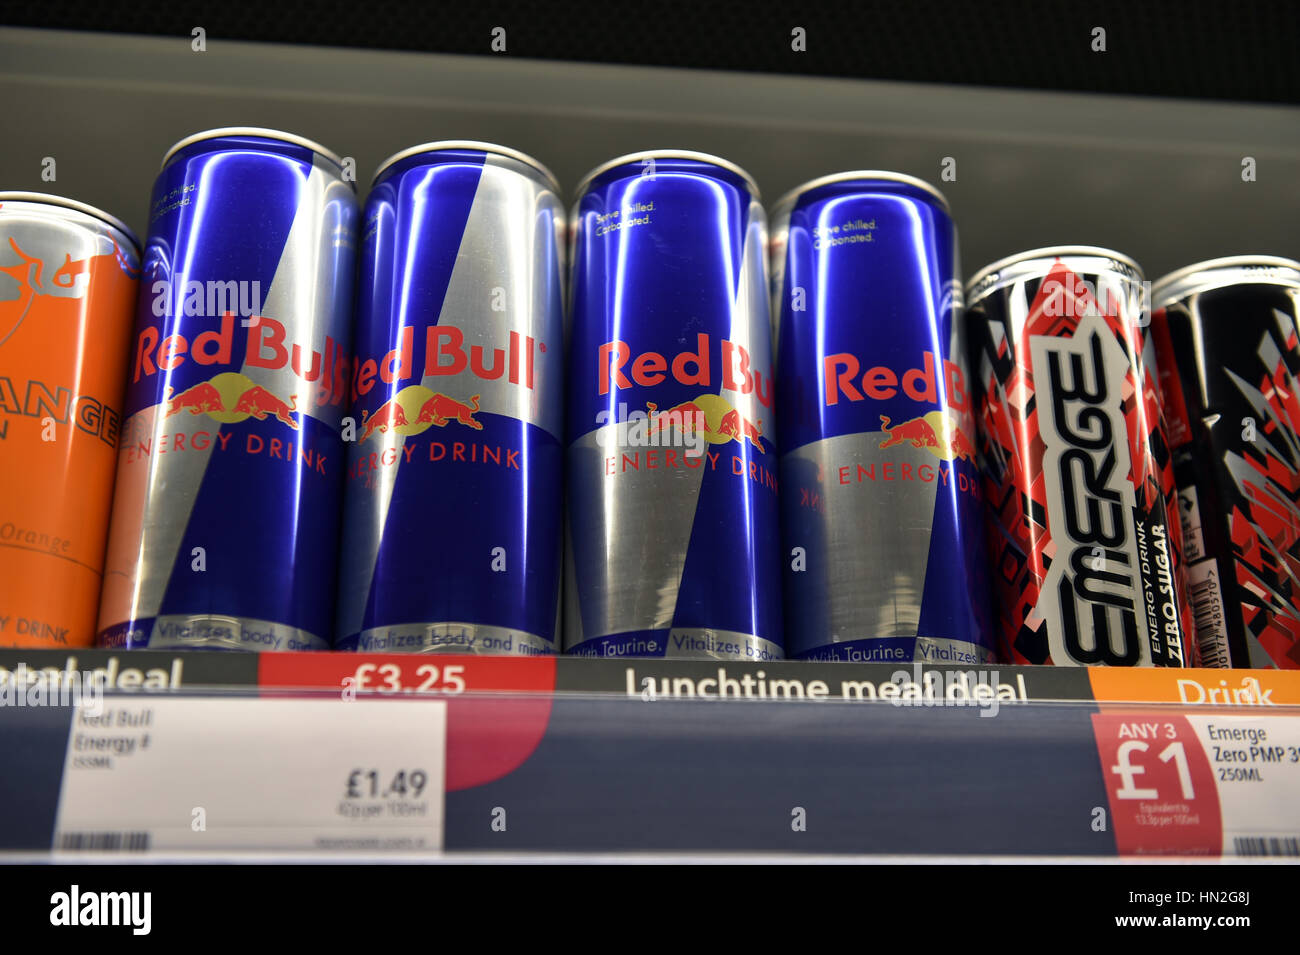 Red Bull energy drinks supermarket shelf, UK Stock Photo